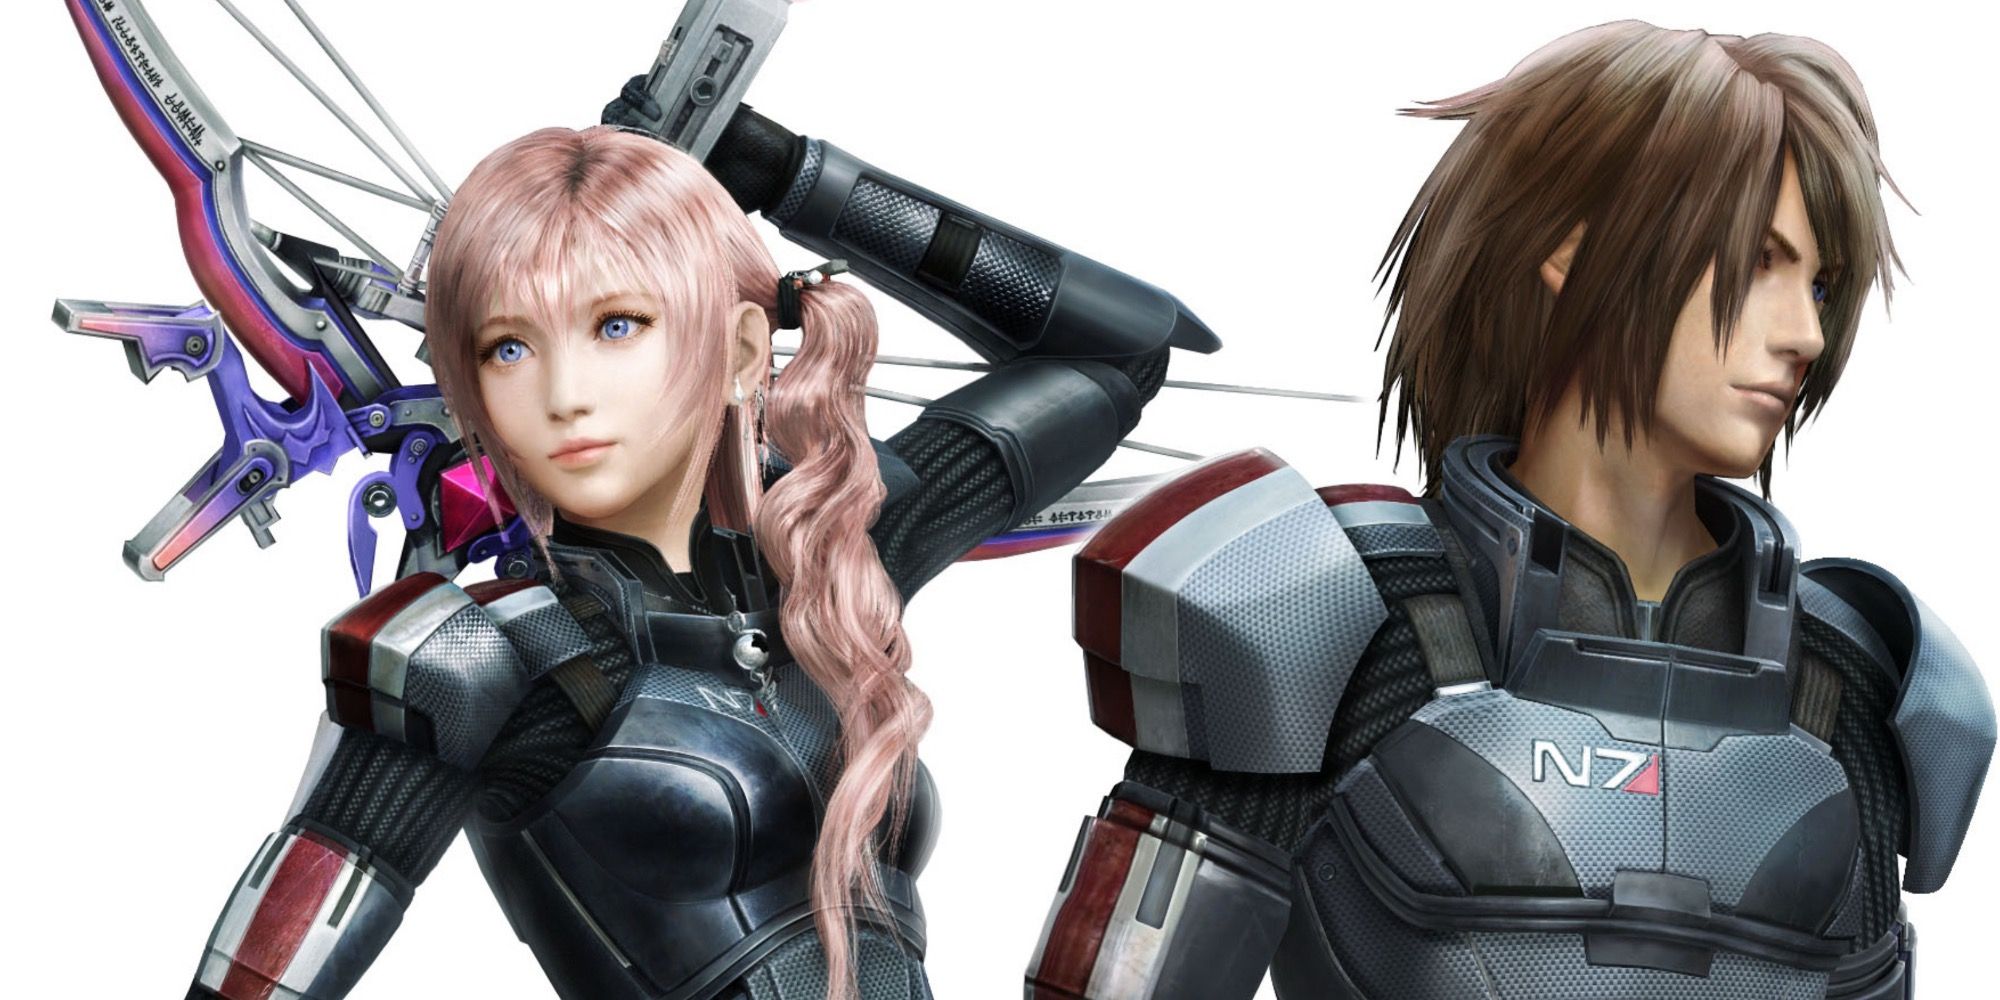 Serah and Noel wearing N7 Armor in Final Fantasy 13-2